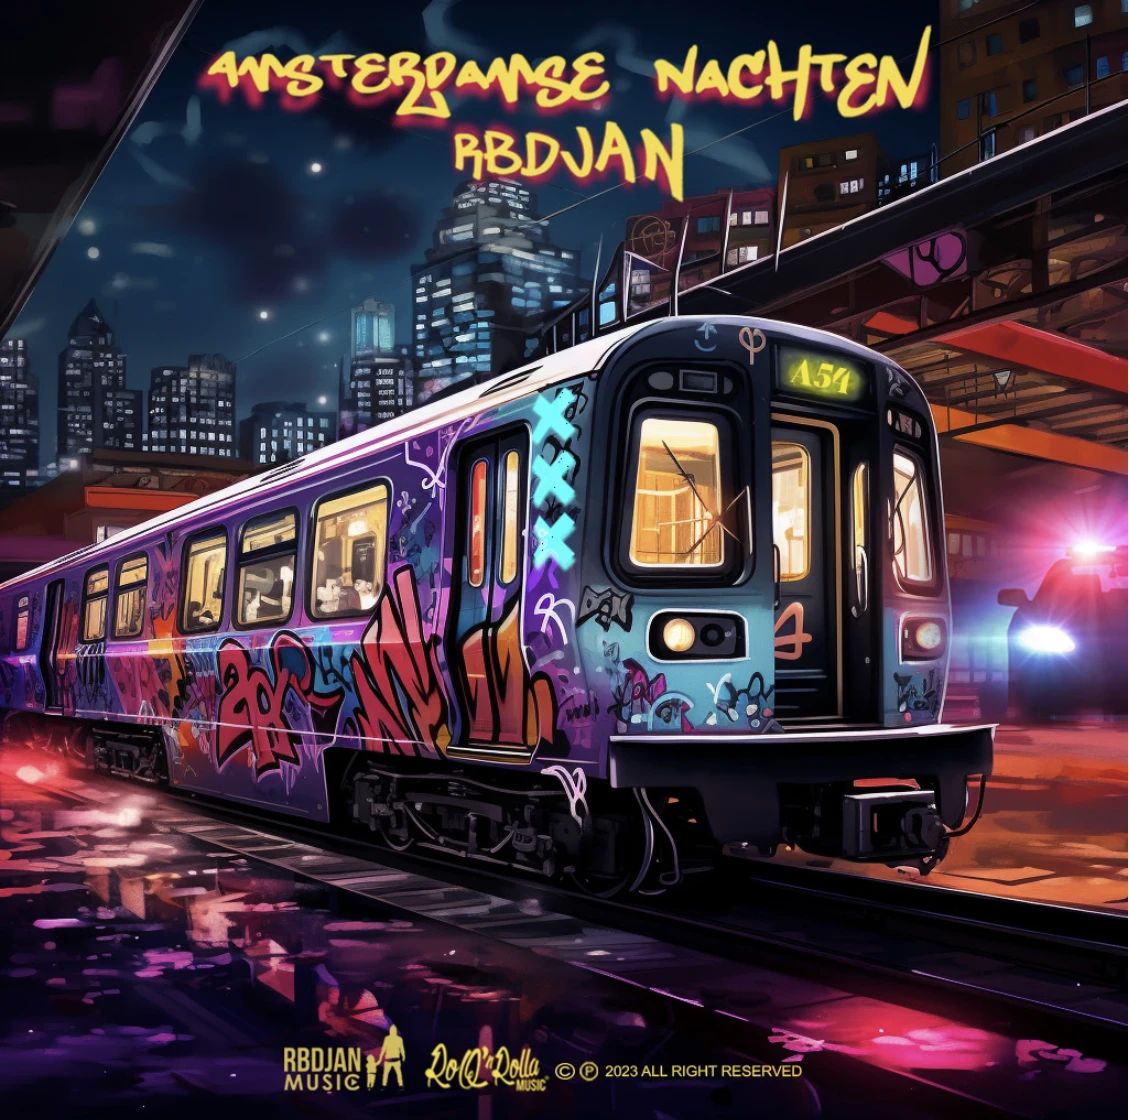 De Nederlandse hiphop legende RBDjan brengt met ‘Amsterdamse Nachten’ eerbetoon aan zijn stad